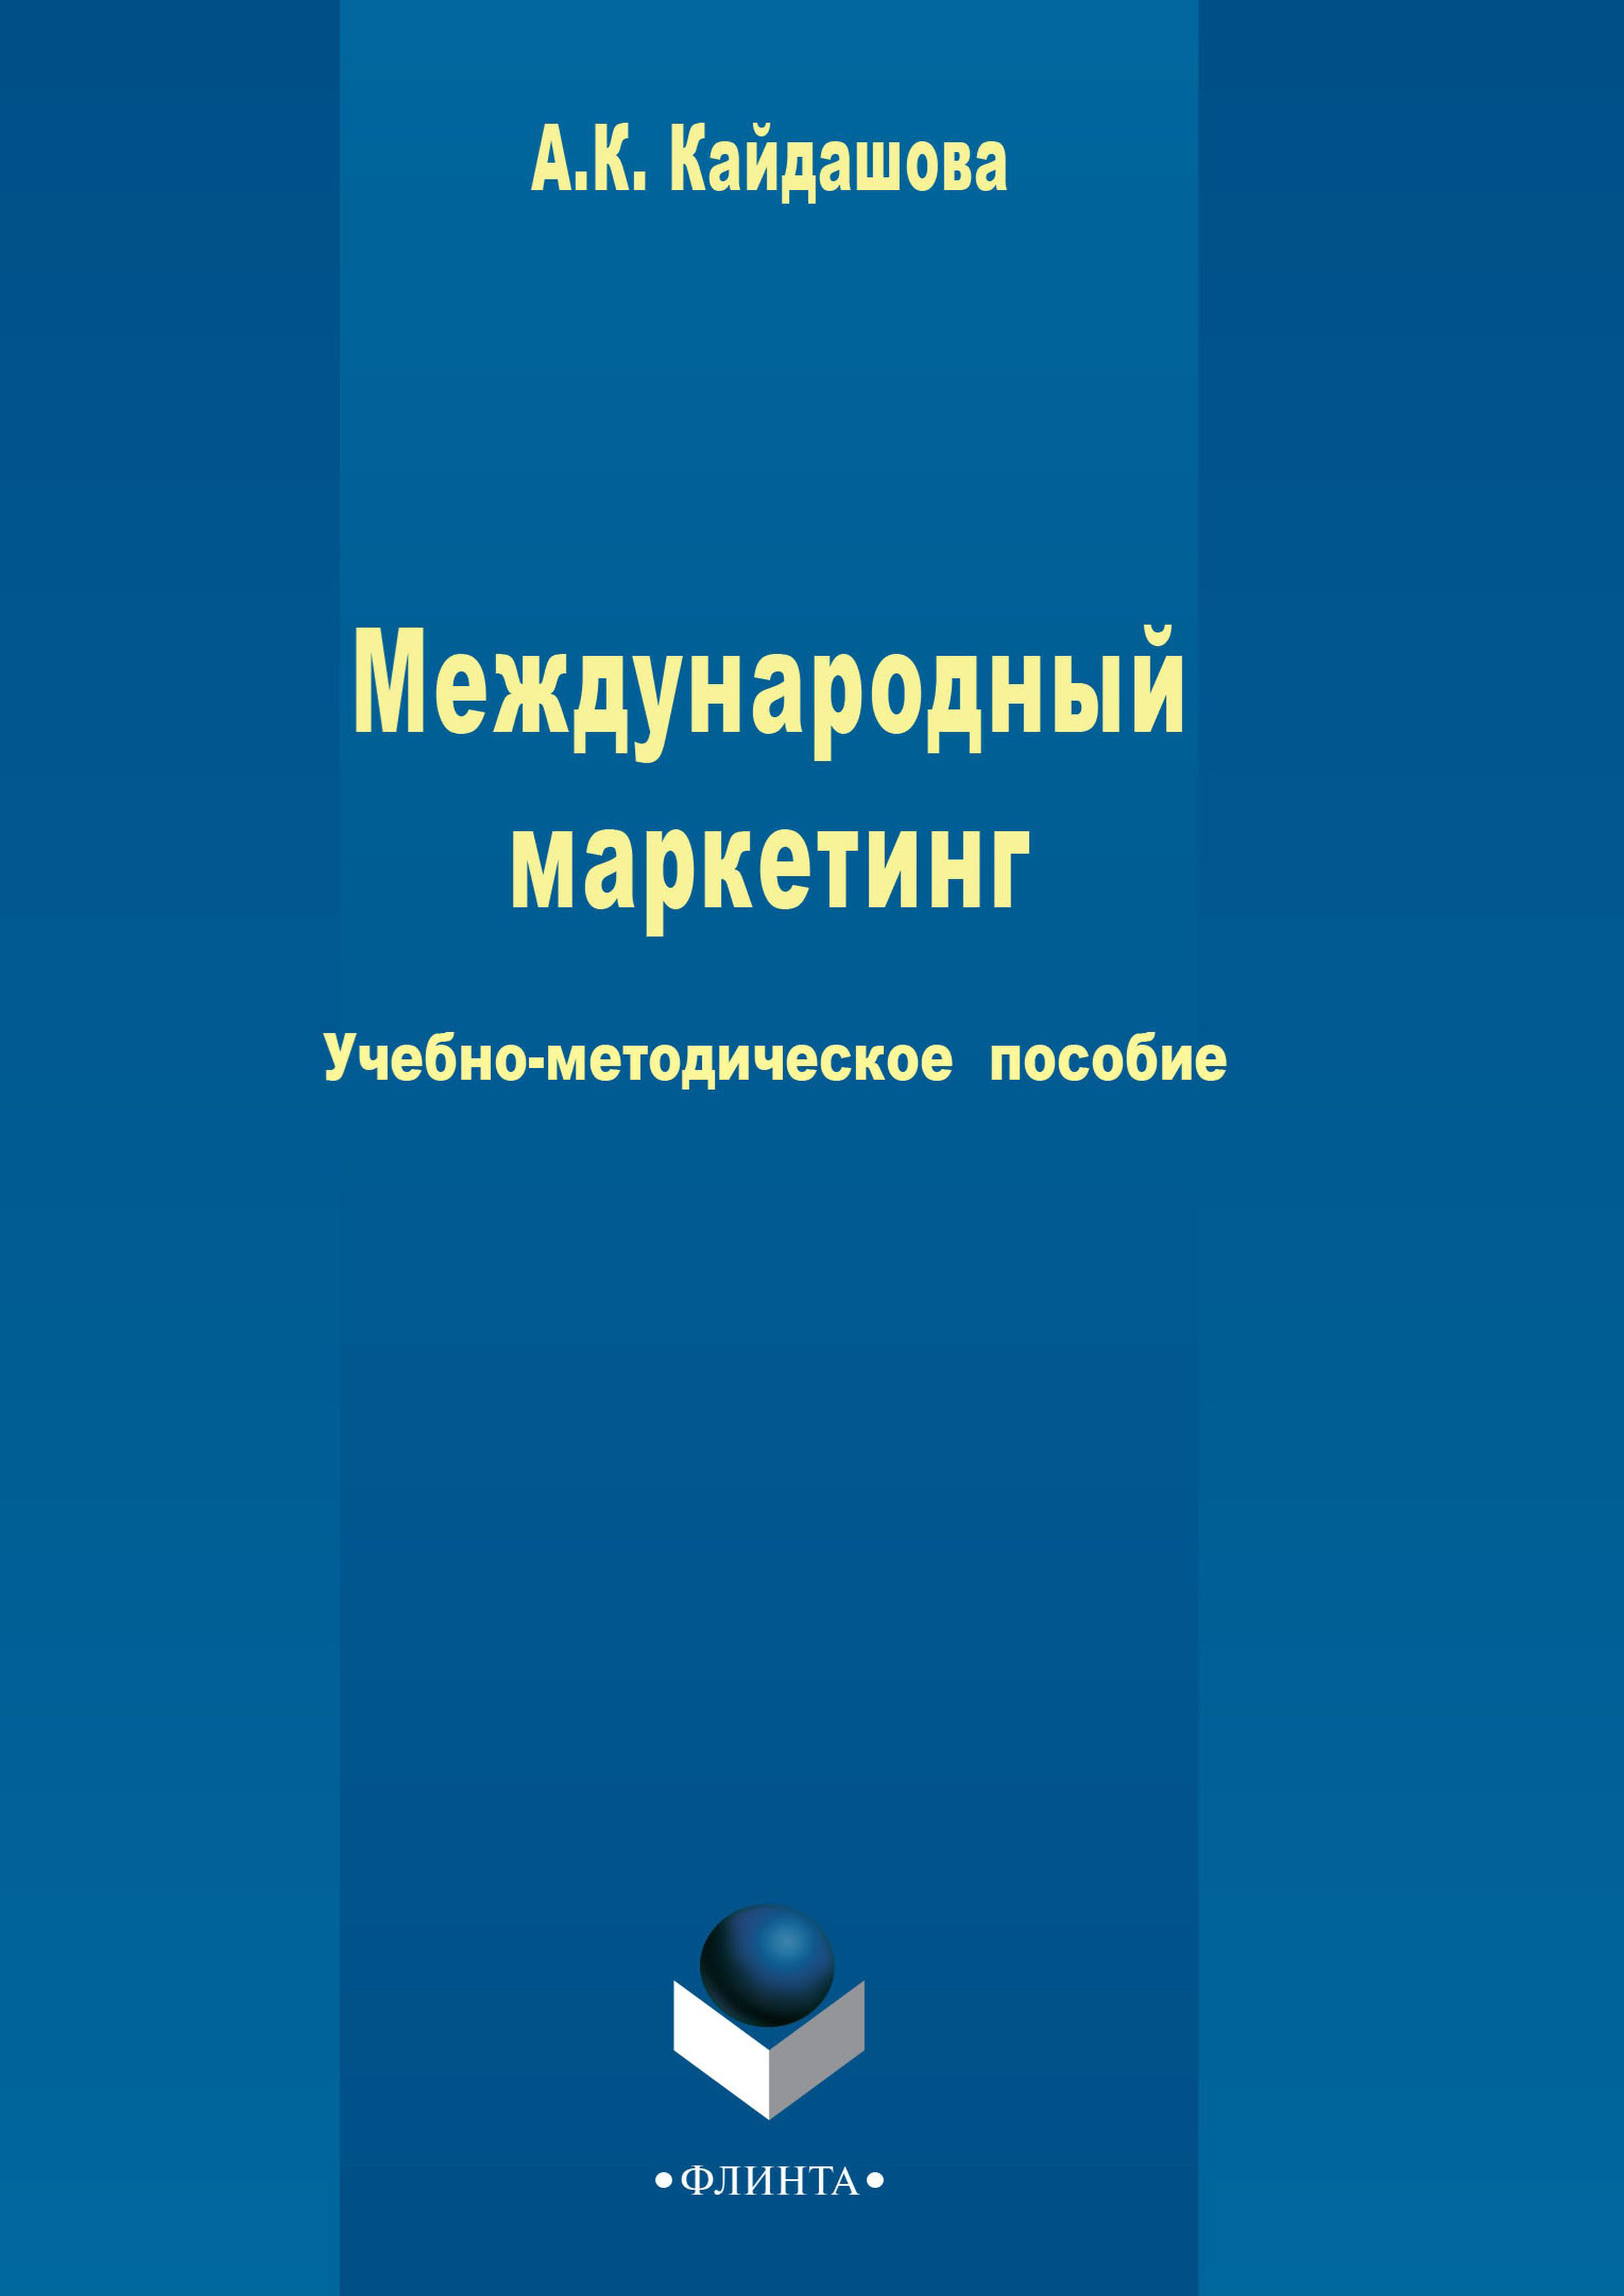 Книга  Международный маркетинг созданная Анна Кайдашова может относится к жанру классический маркетинг, учебно-методические пособия. Стоимость электронной книги Международный маркетинг с идентификатором 48763835 составляет 105.00 руб.